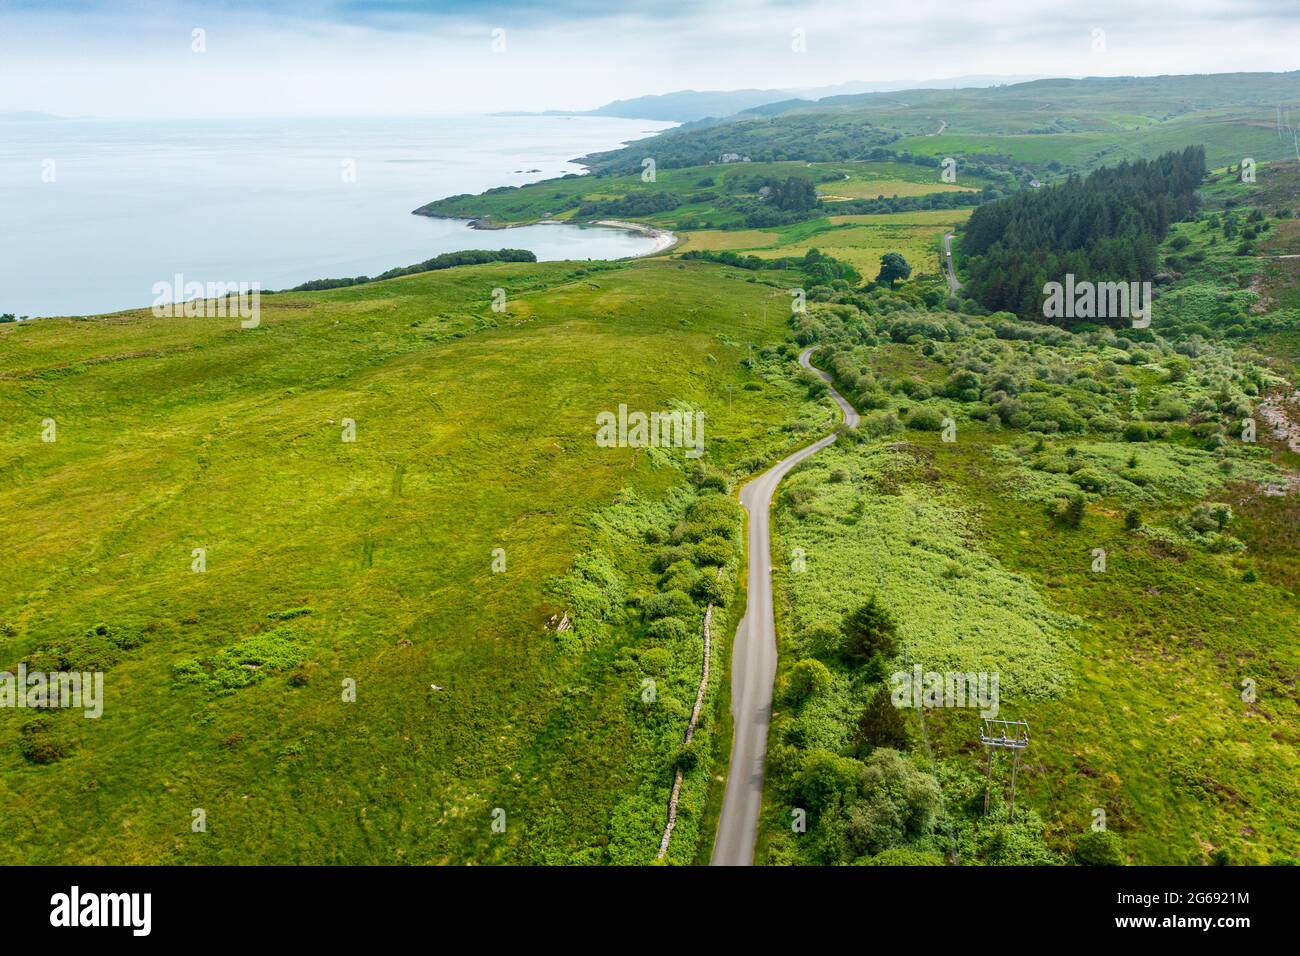 Vista aerea dal drone della strada rurale a pista singola sulla penisola di Kintyre, parte del percorso turistico Kintyre 66 in Argyll & Bute, Scozia Regno Unito Foto Stock